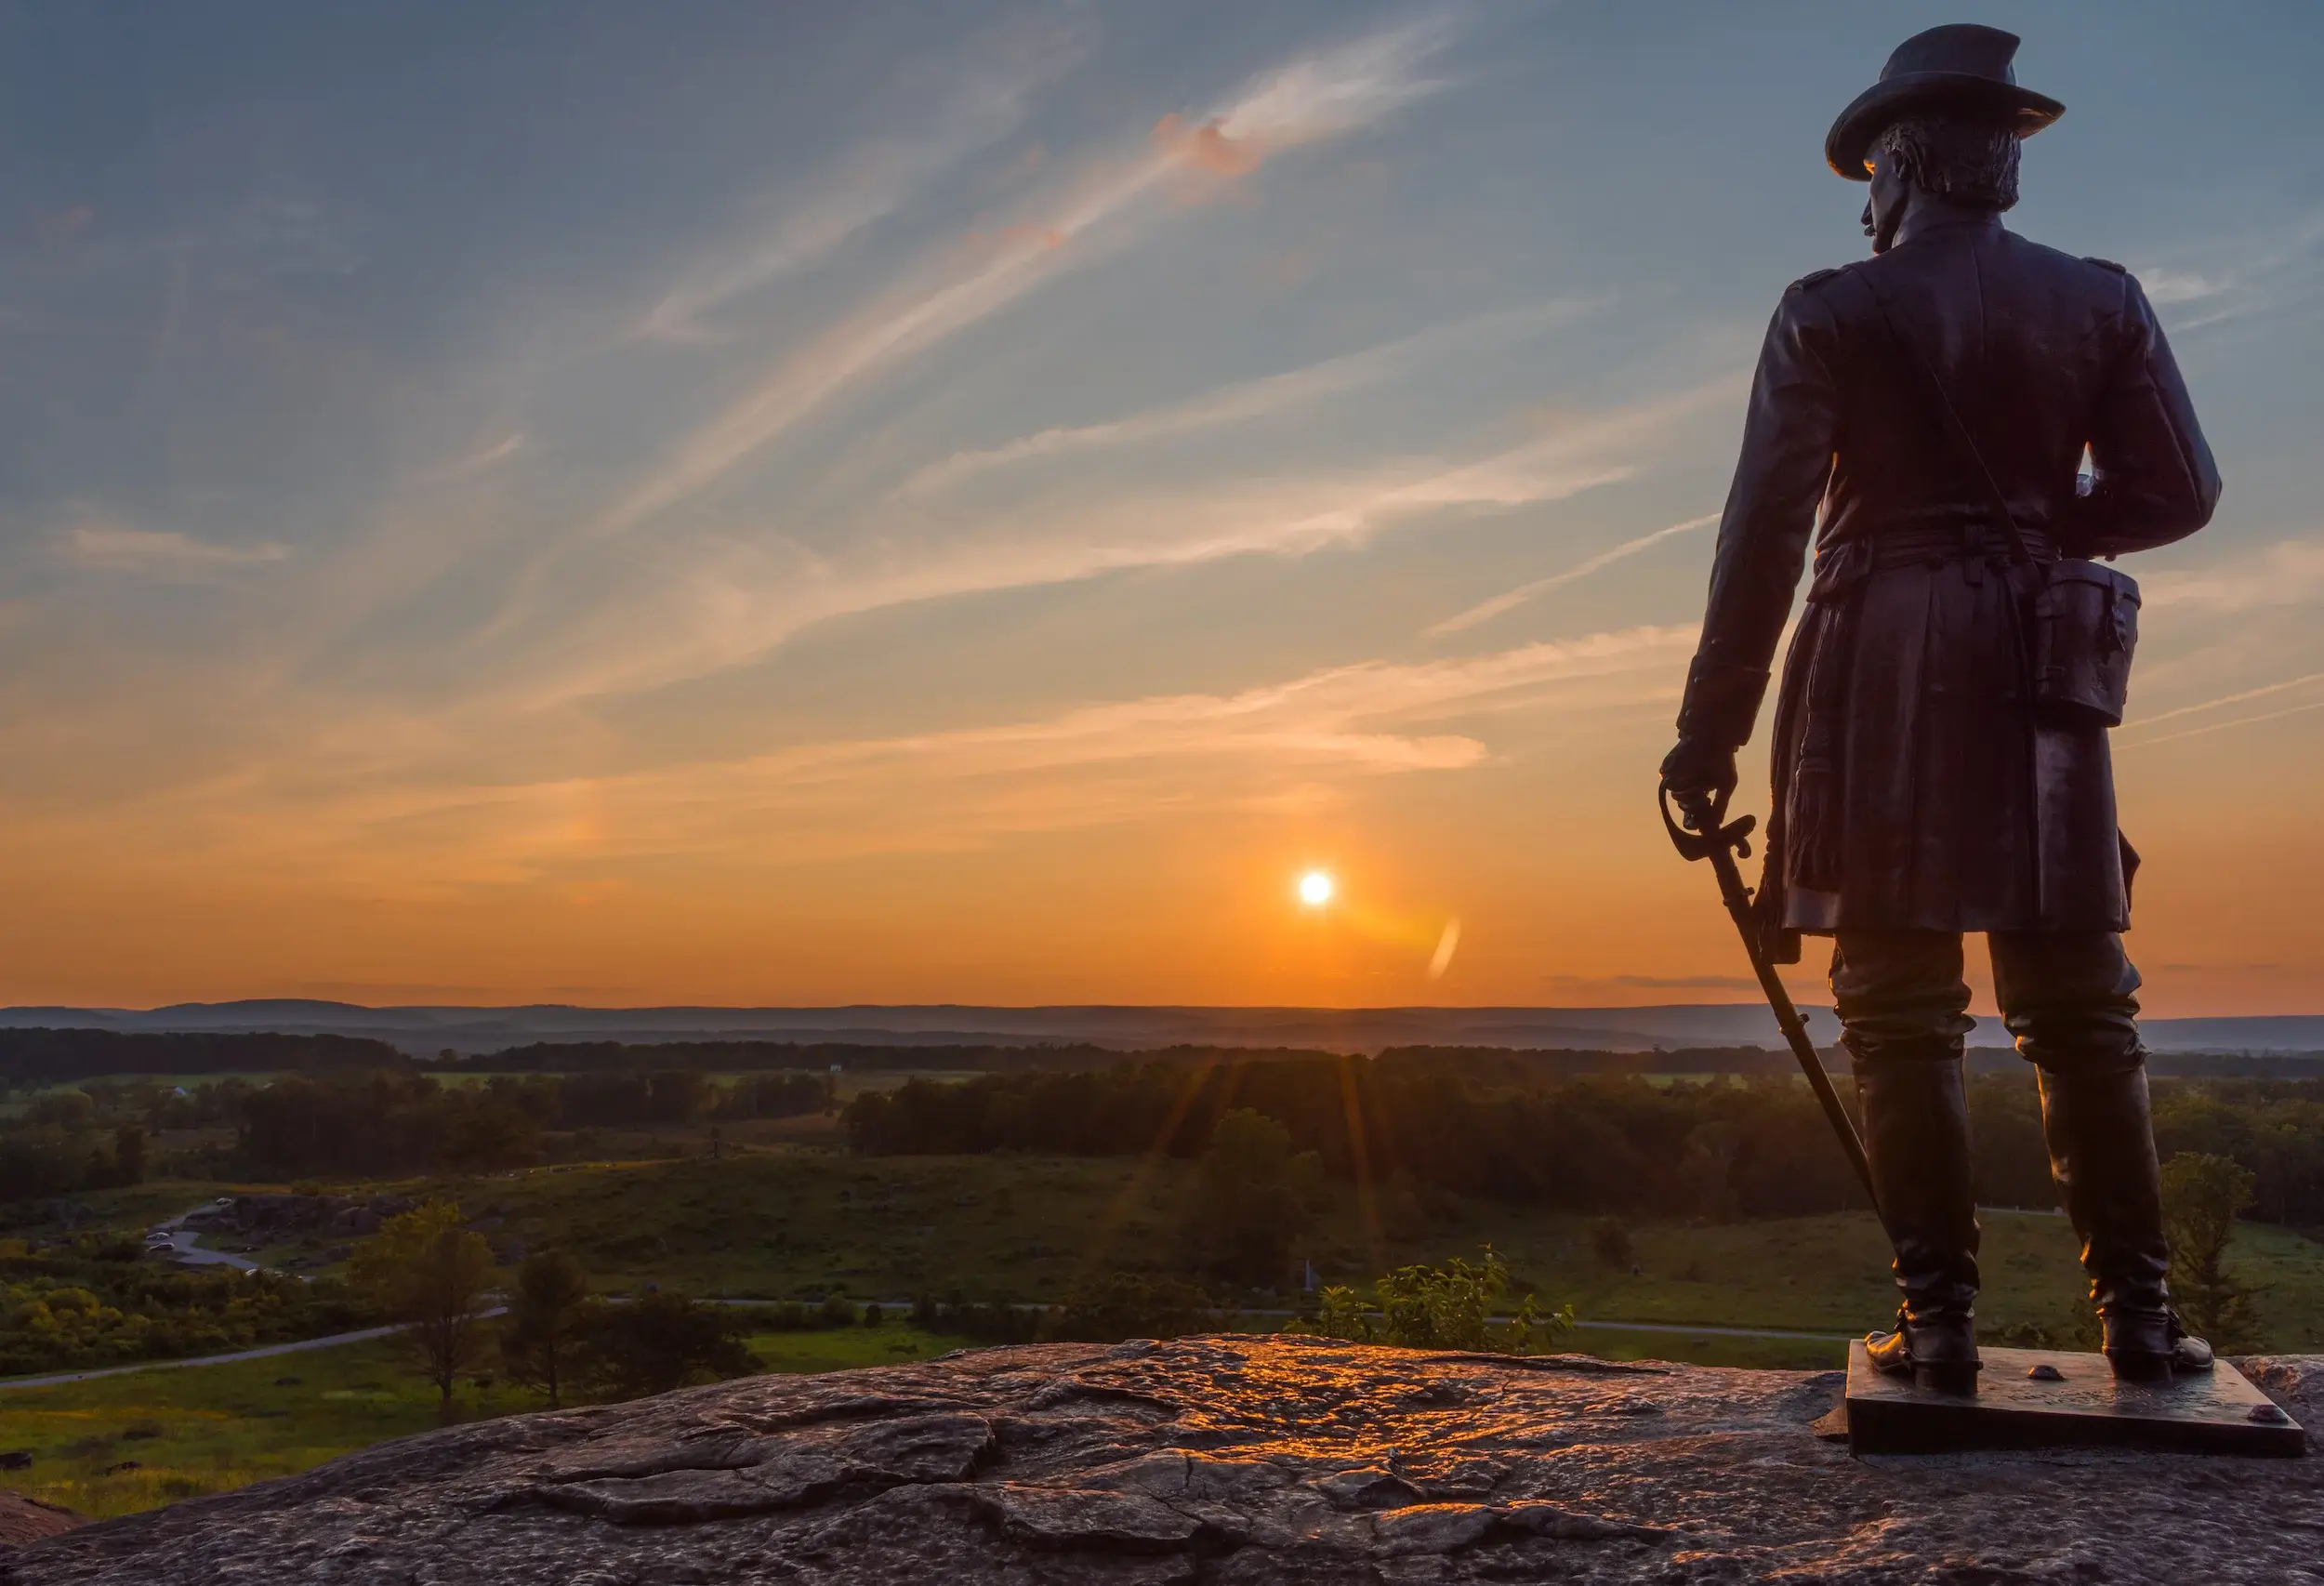 General Gouverneur Warren overlooking Gettysburg, Pennsylvania